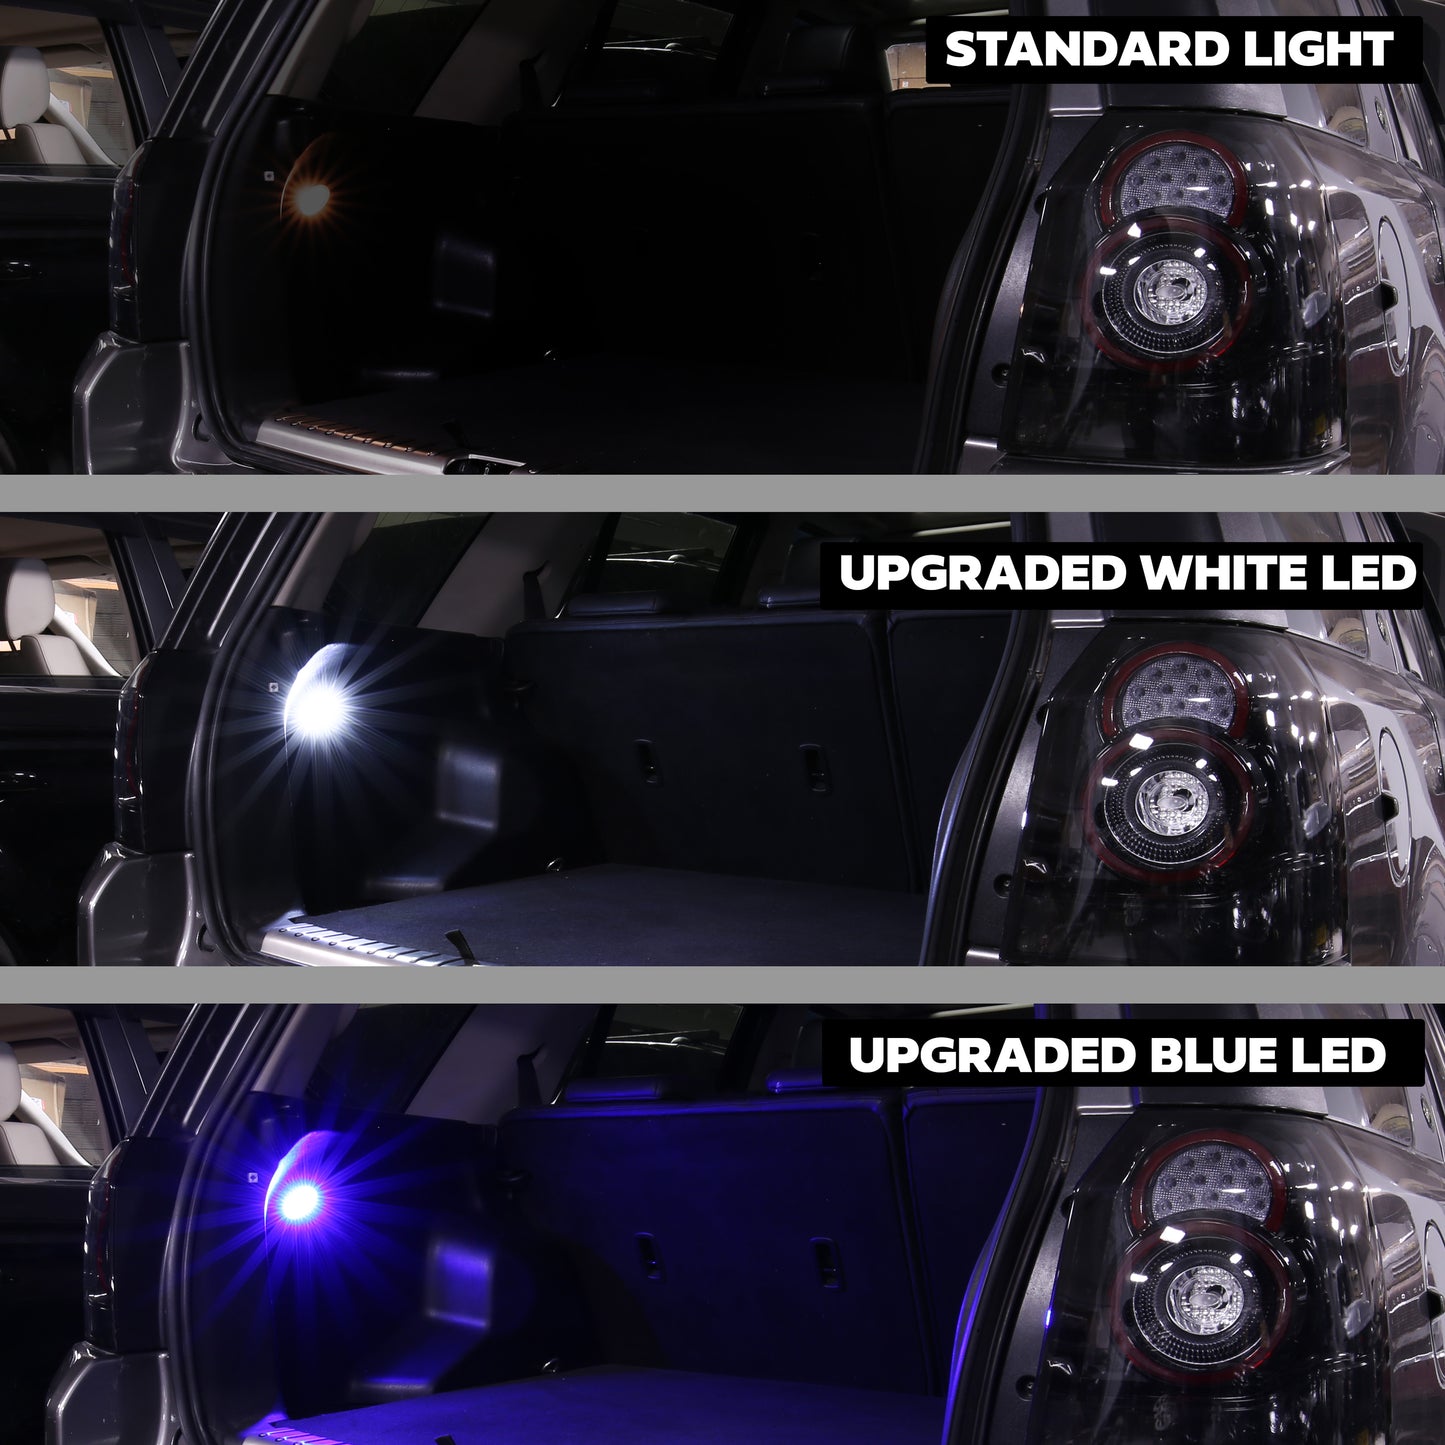 Interior Boot LED Light for Land Rover Freelander 2 - Blue